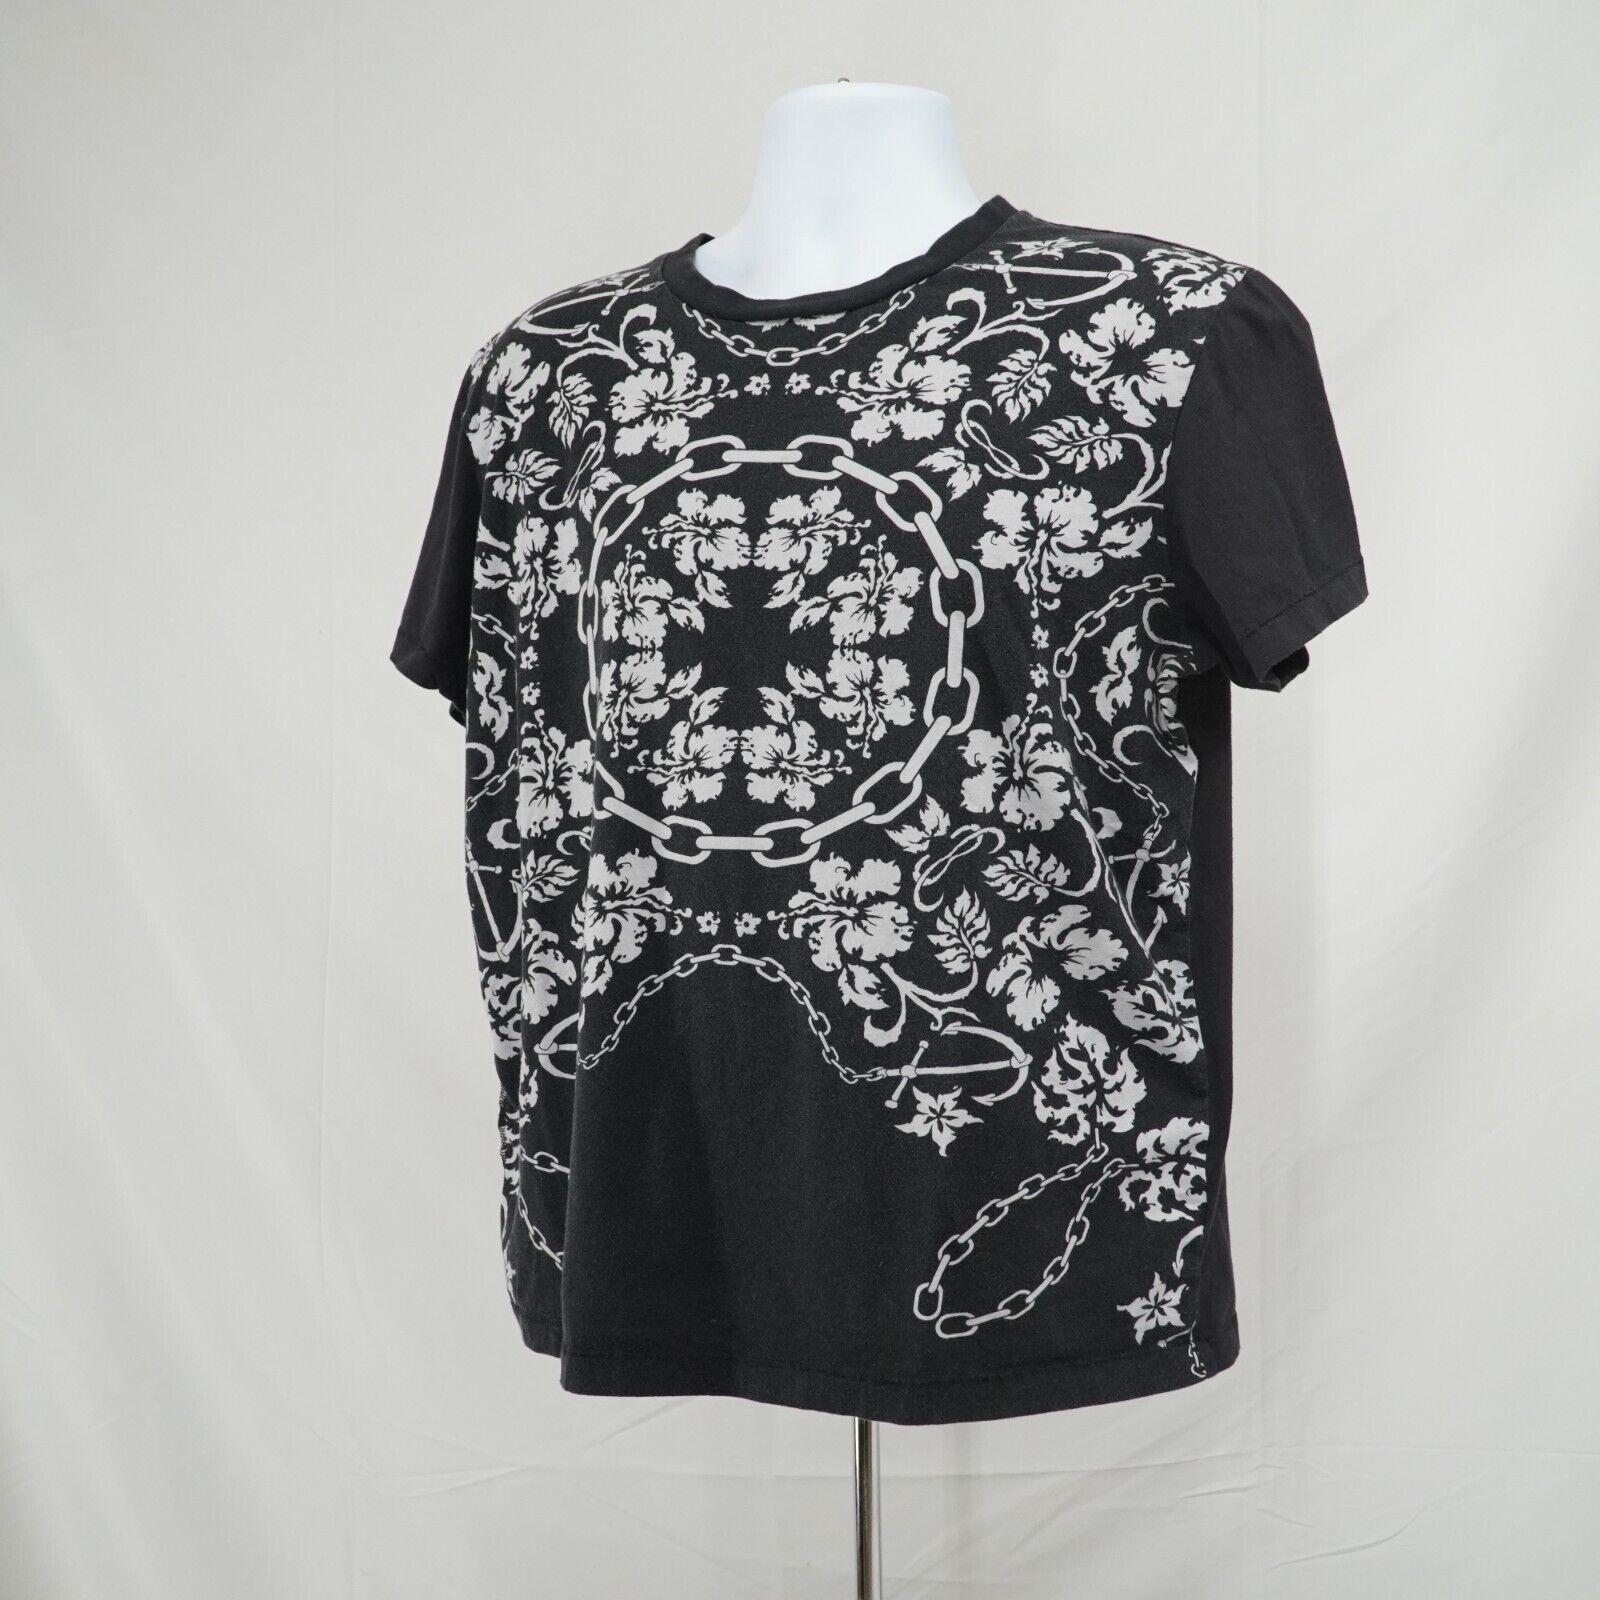 Black White Printed Shirt Floral Chains Anchor Hawaiian Tee - 2